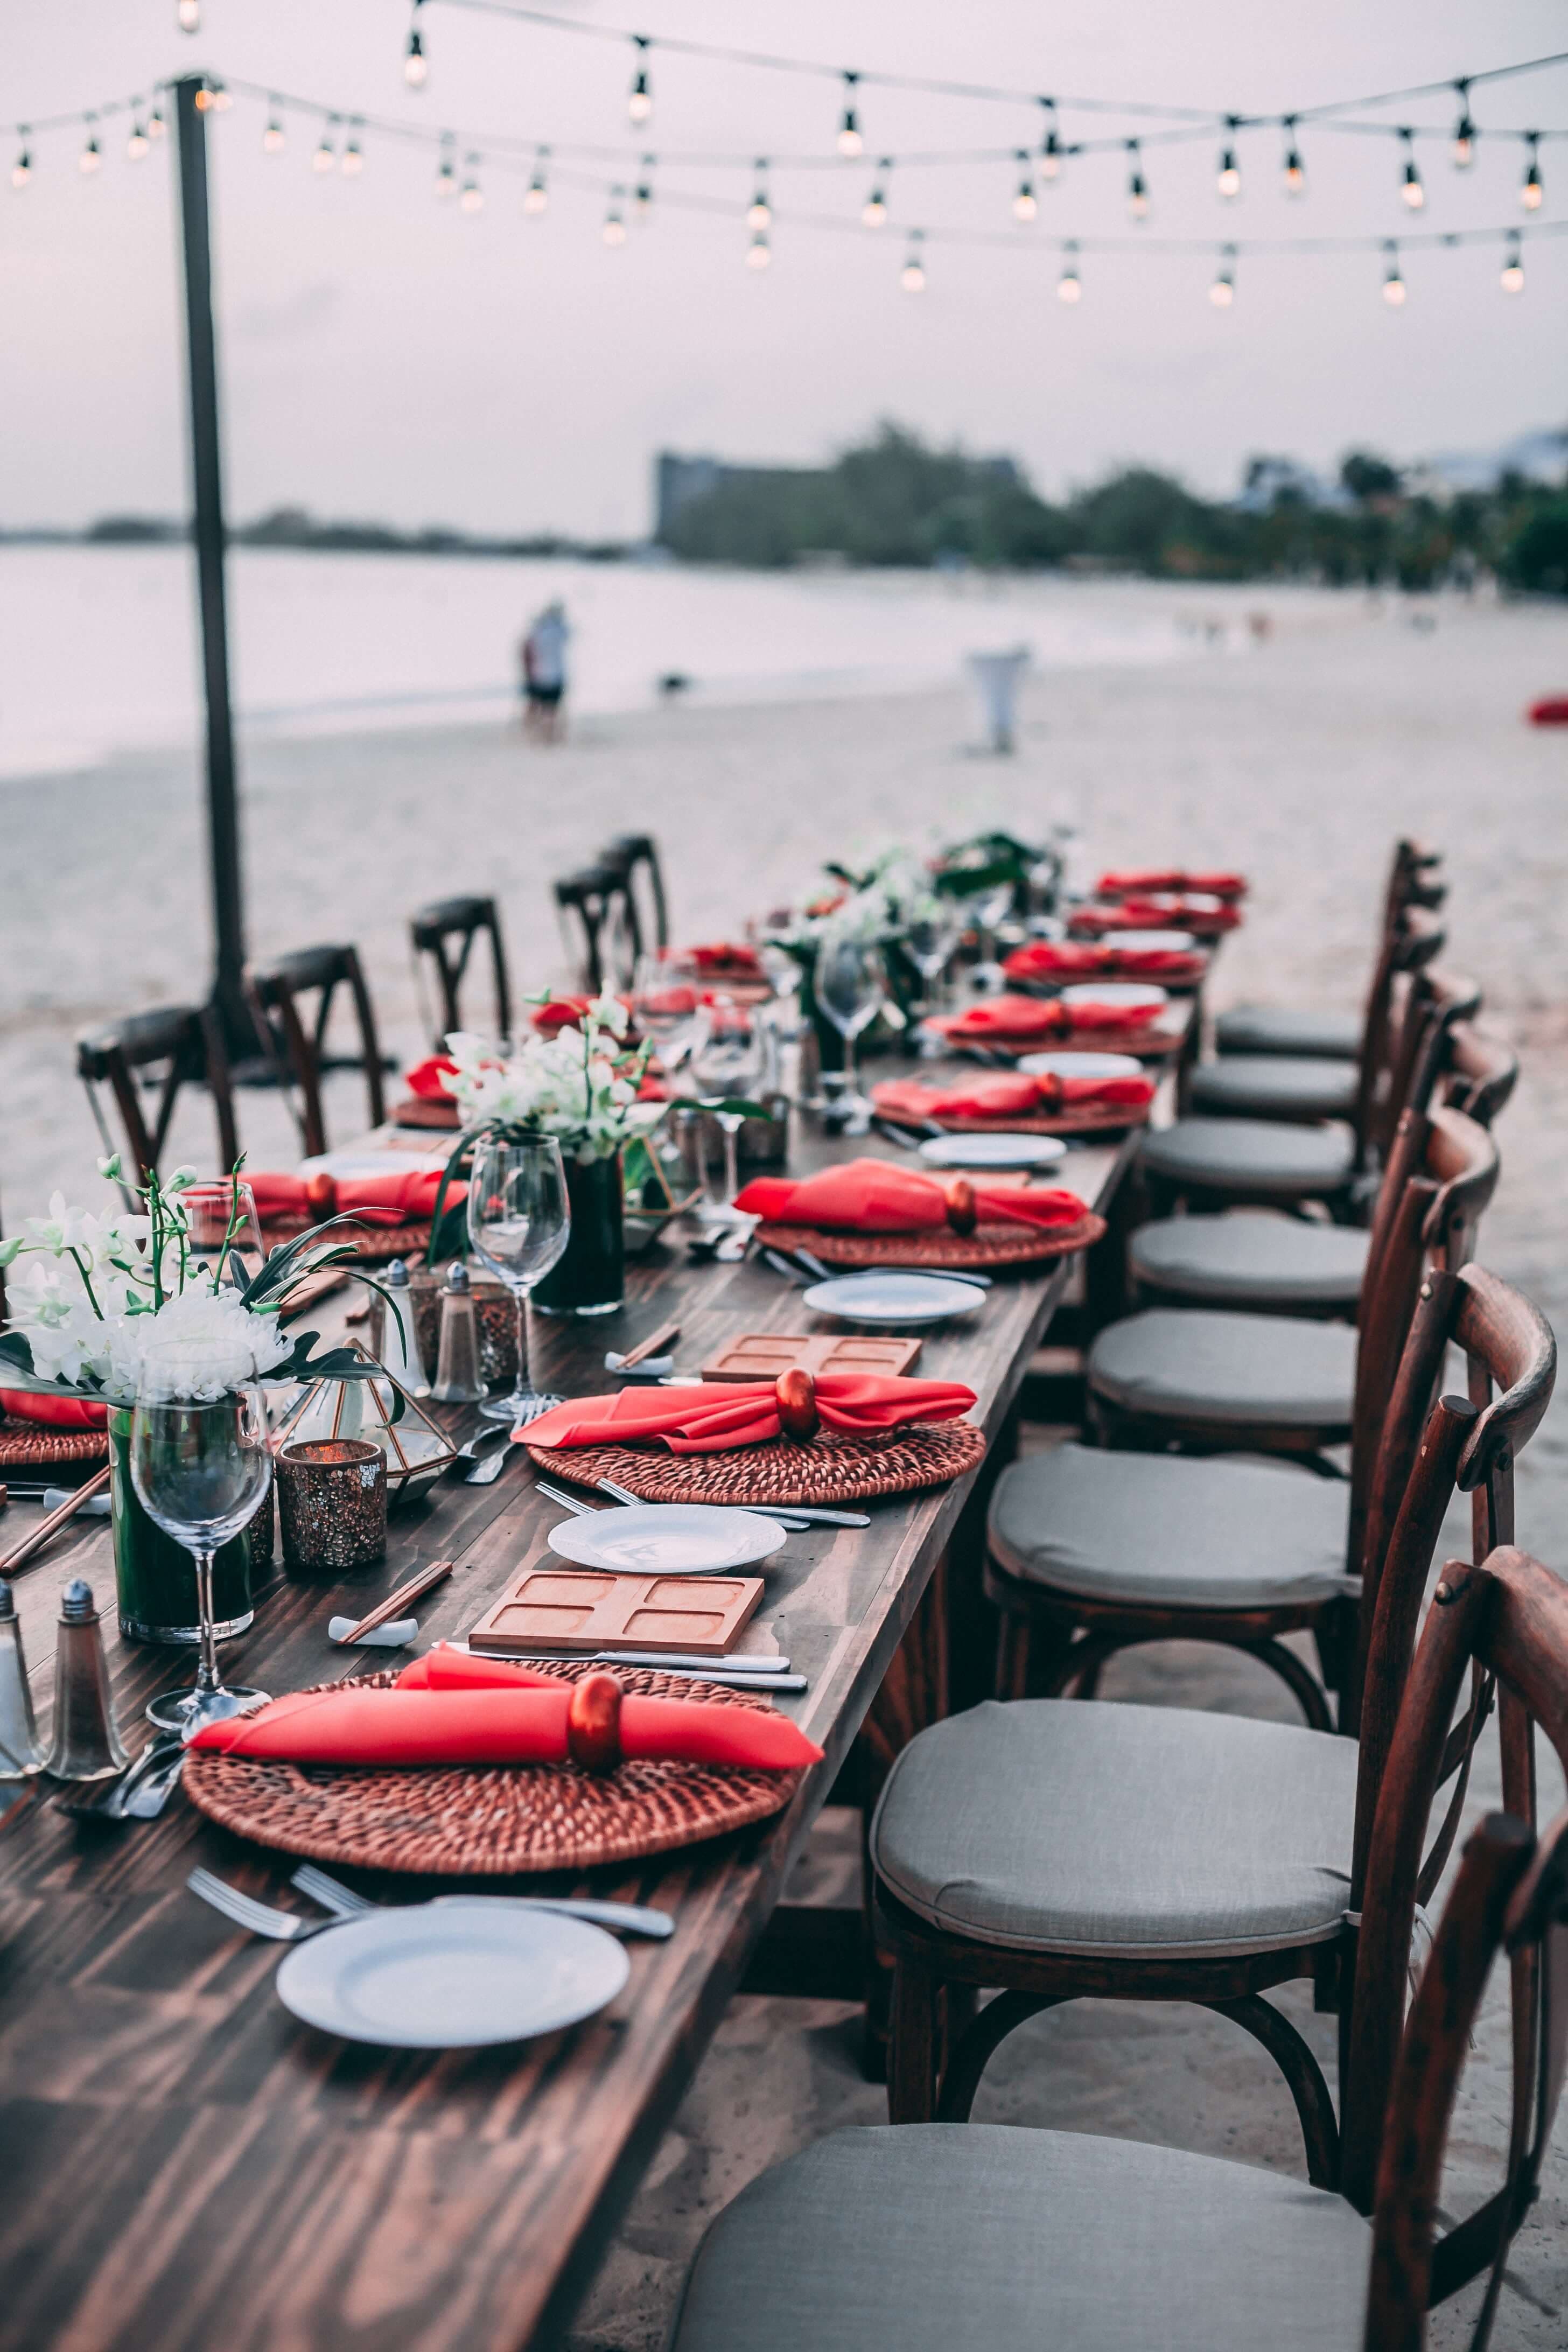 طاولة شاطئية معدة لحدث زفاف يقام على الشاطئ.